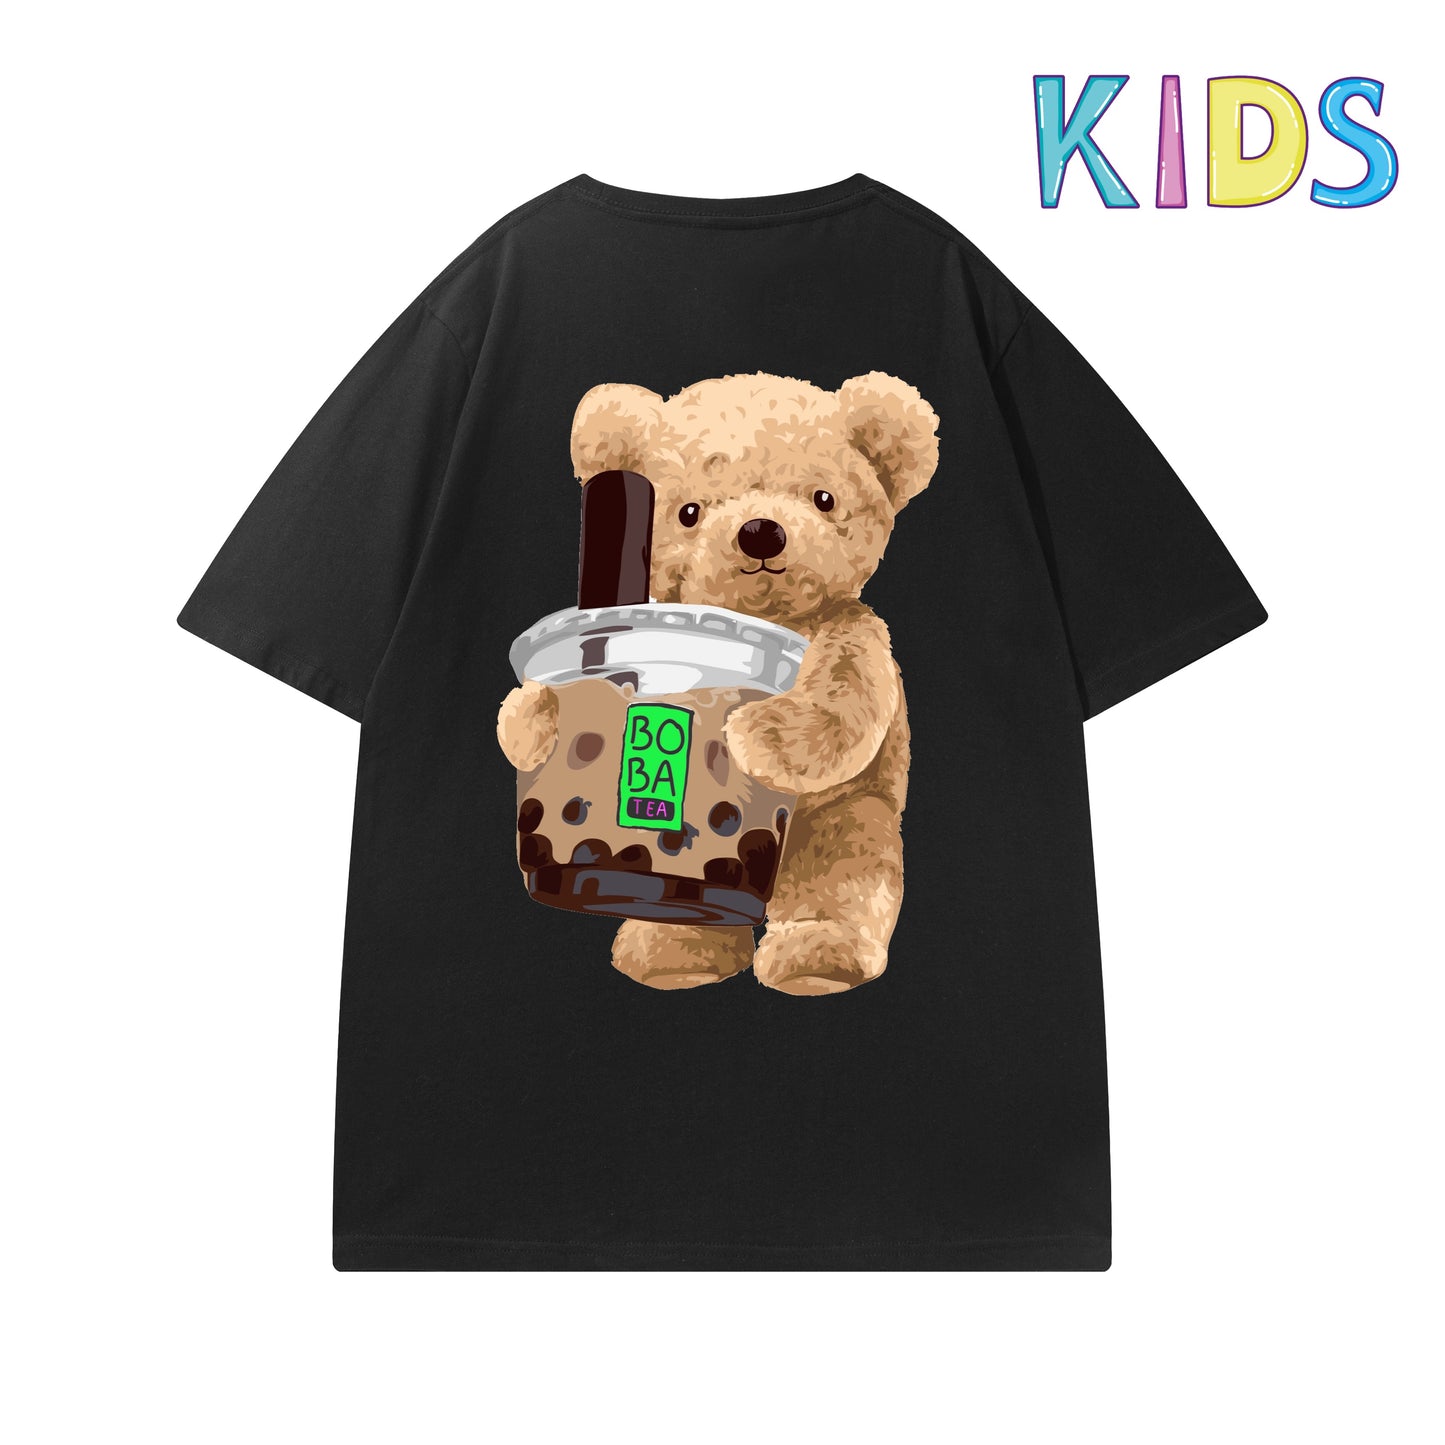 Etiquette Child T-Shirt - 0017 Boba Tea Bear